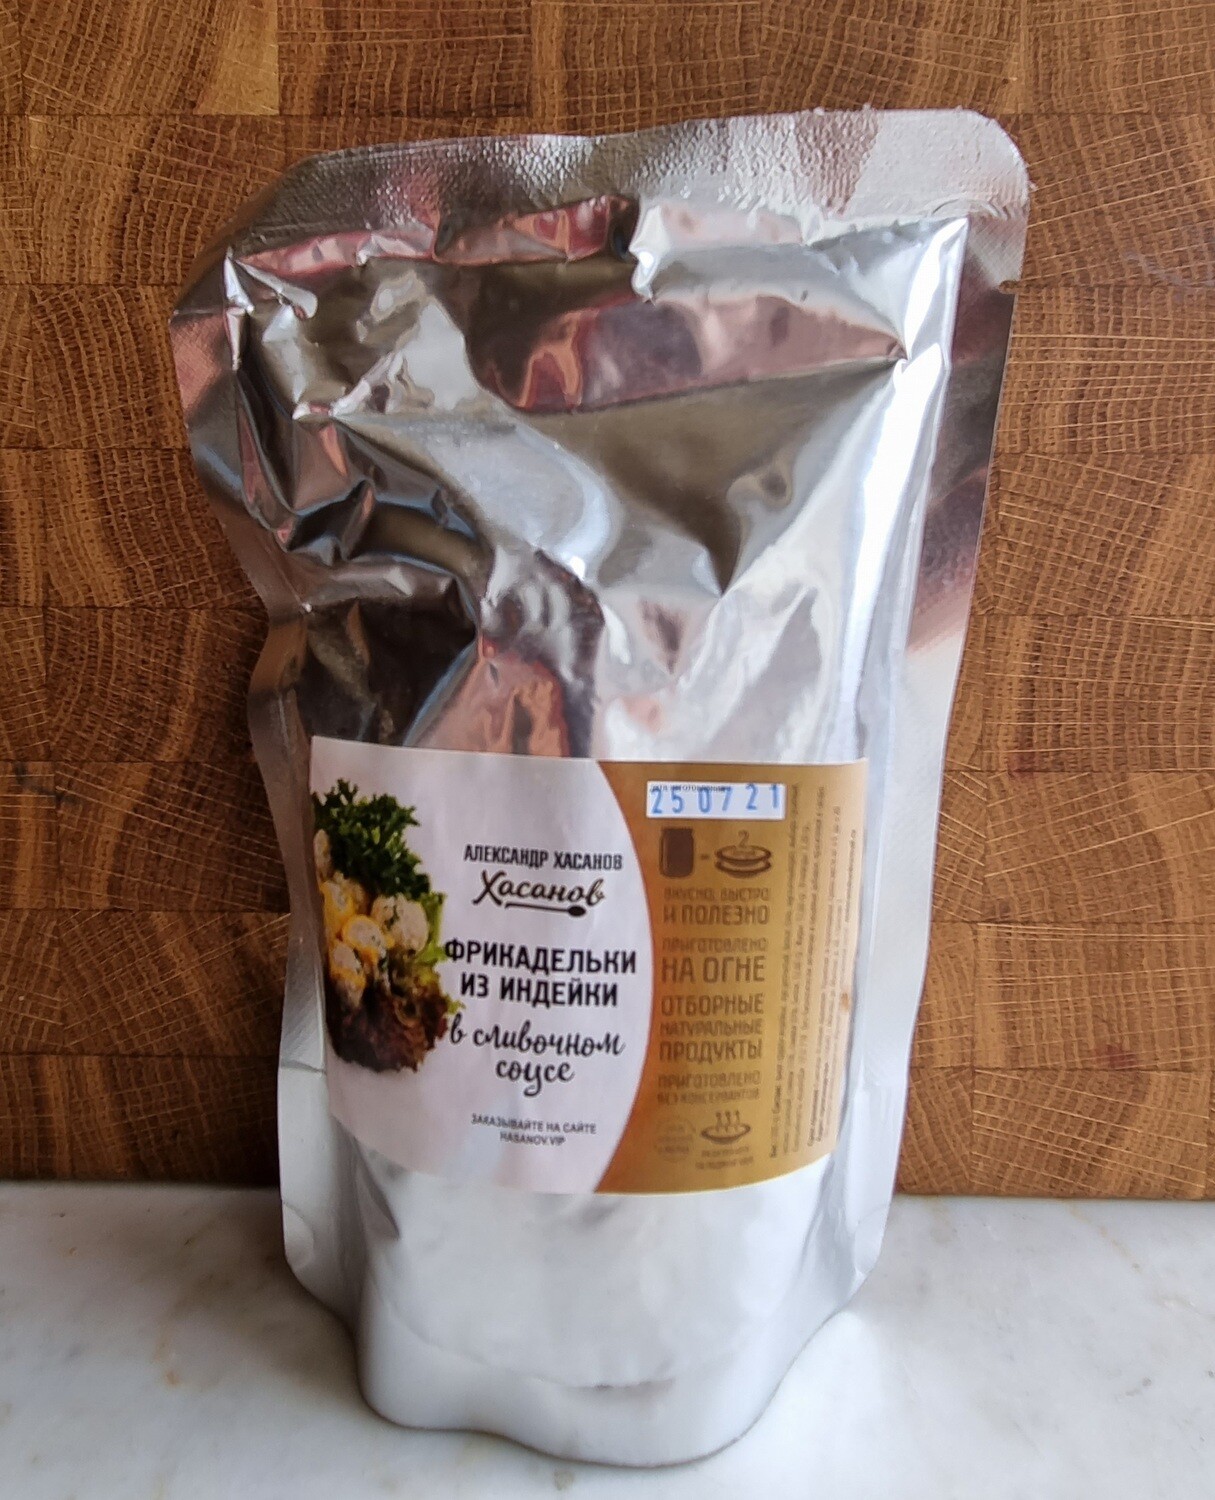 Фрикадельки из грудки индейки в сливочном соусе(дой-пак упаковка) 500 гр.